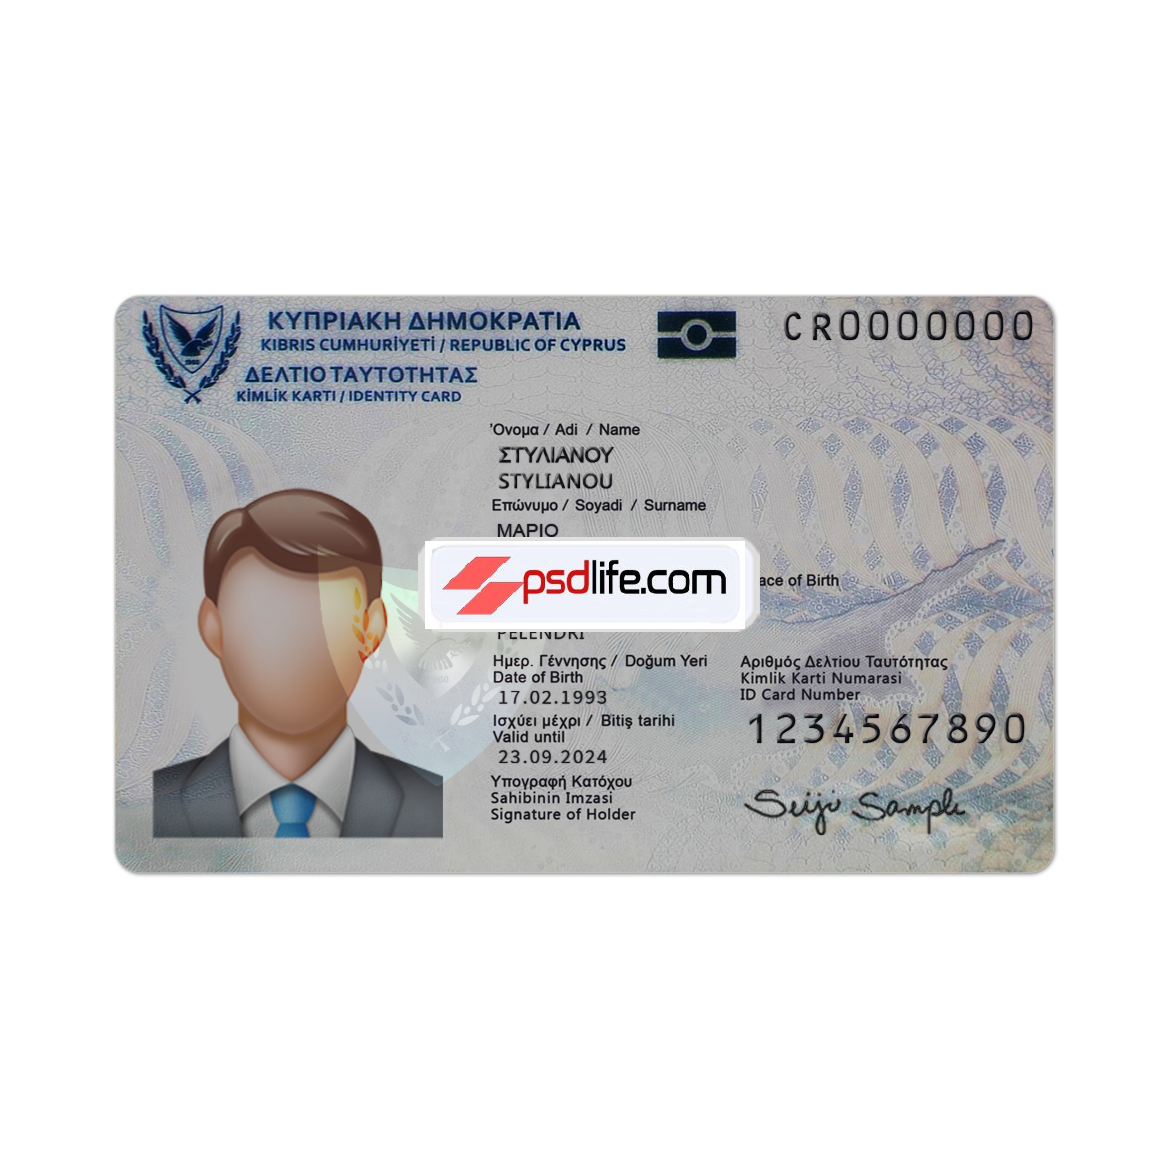 Cyprus id card fake psd template editable format / Κάρτα ταυτότητας Κύπρου ψεύτικο πρότυπο psd επεξεργάσιμο